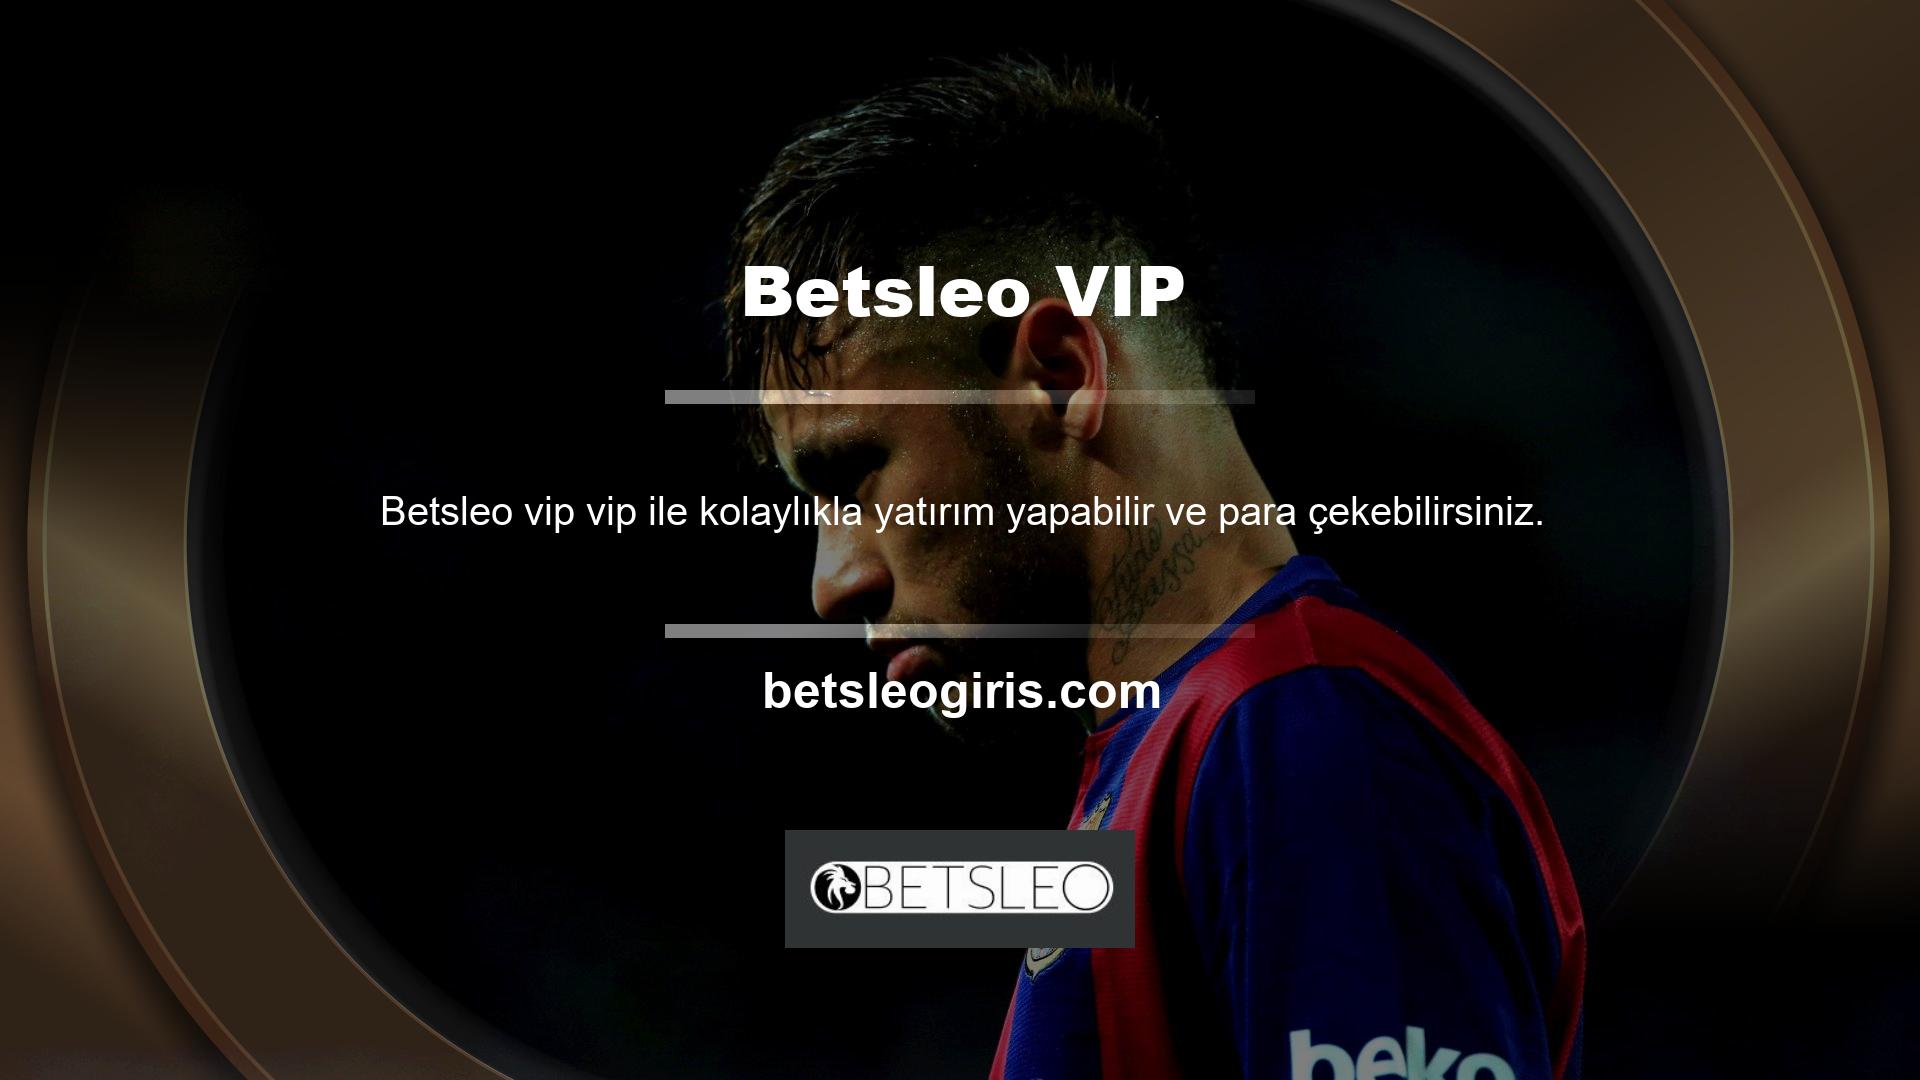 Betsleo Vip Cluba katılmak için web sitesinin VIP bölümünde yer alan formu doldurmanız yeterlidir